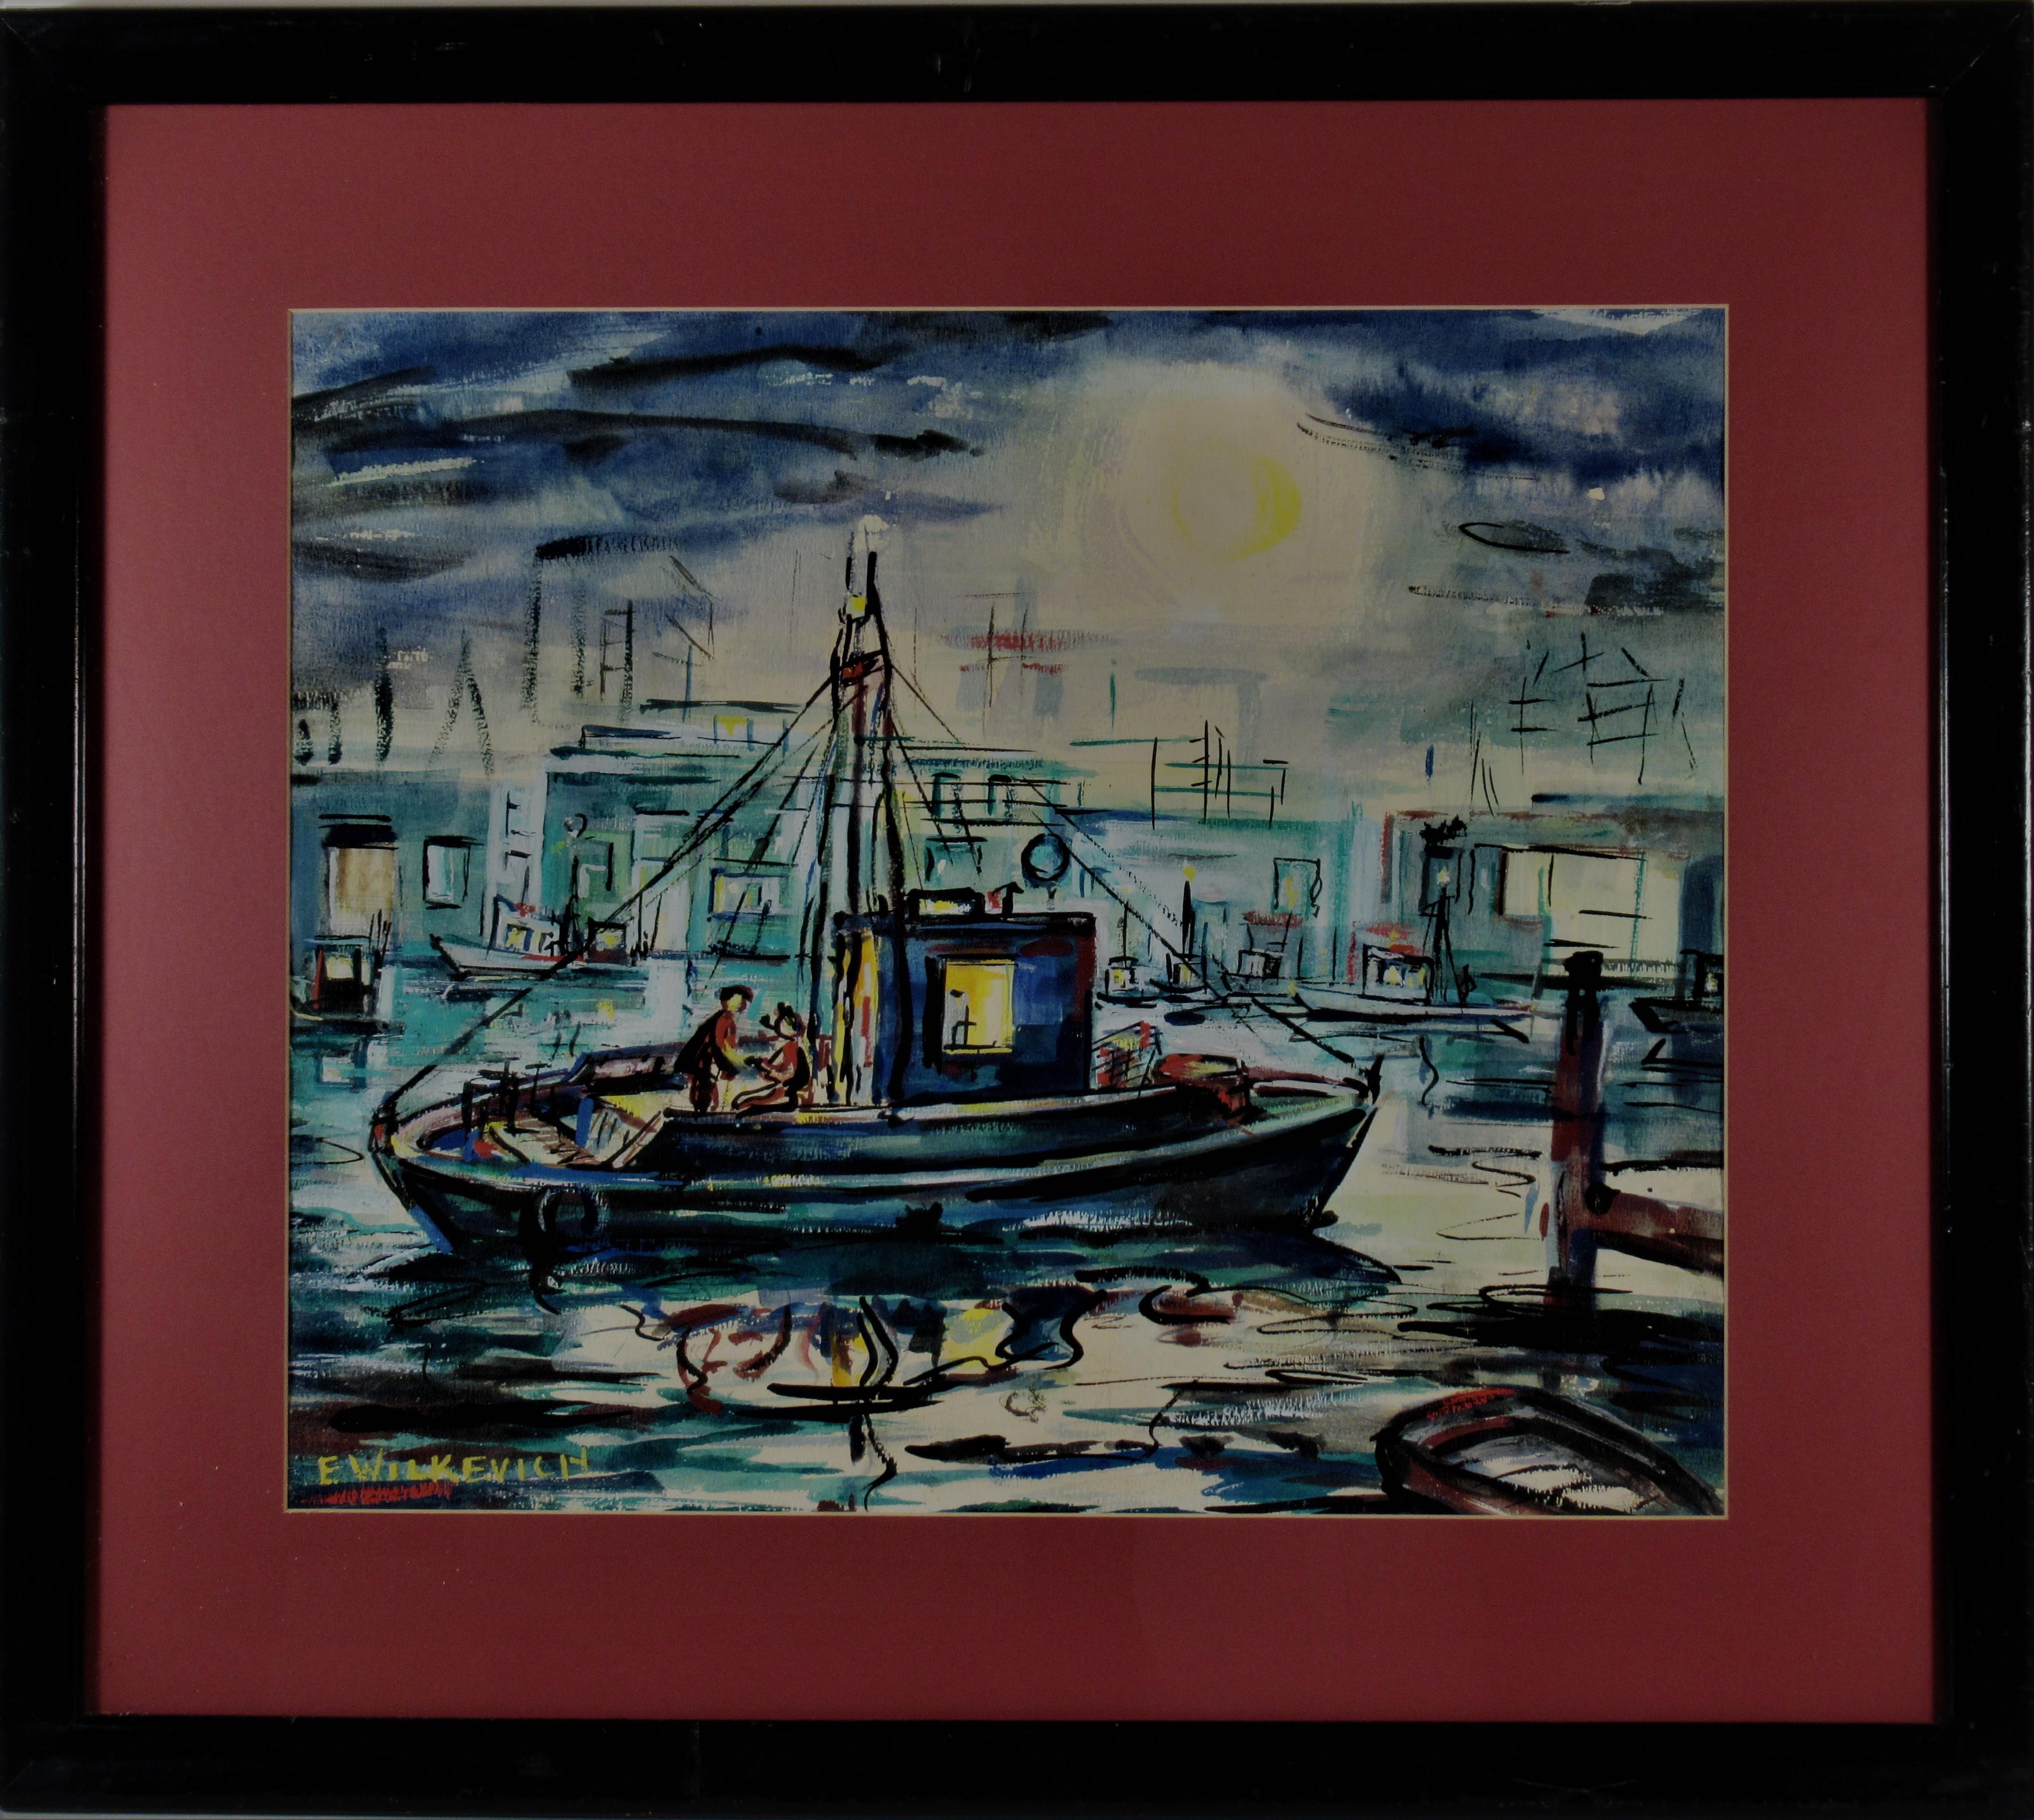 Eleanor Wilkevich Figurative Art - Fishing Boat